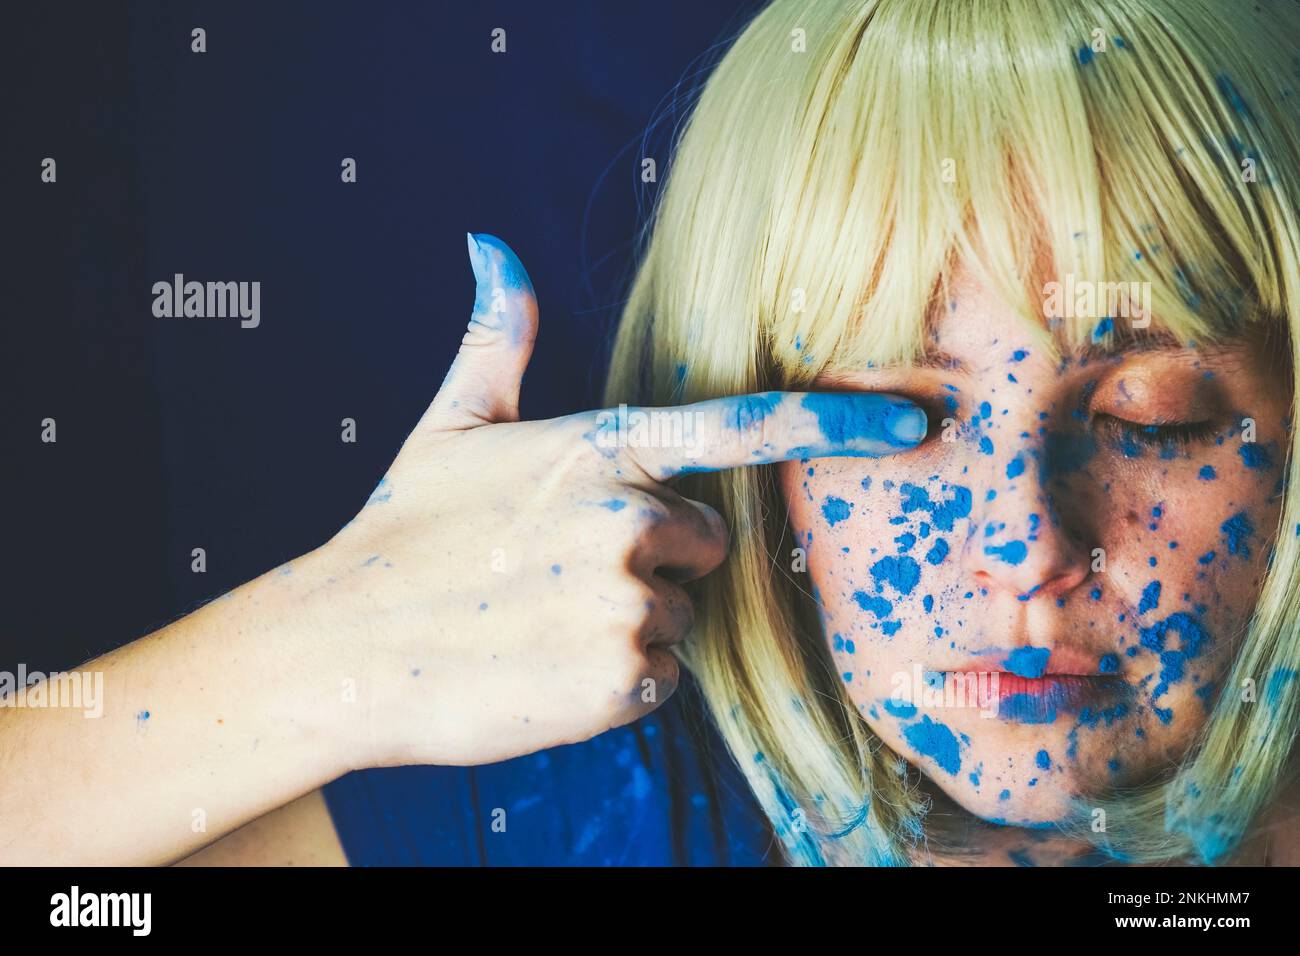 Femme avec de la peinture bleue sur le visage touchant l'oeil contre fond bleu Banque D'Images